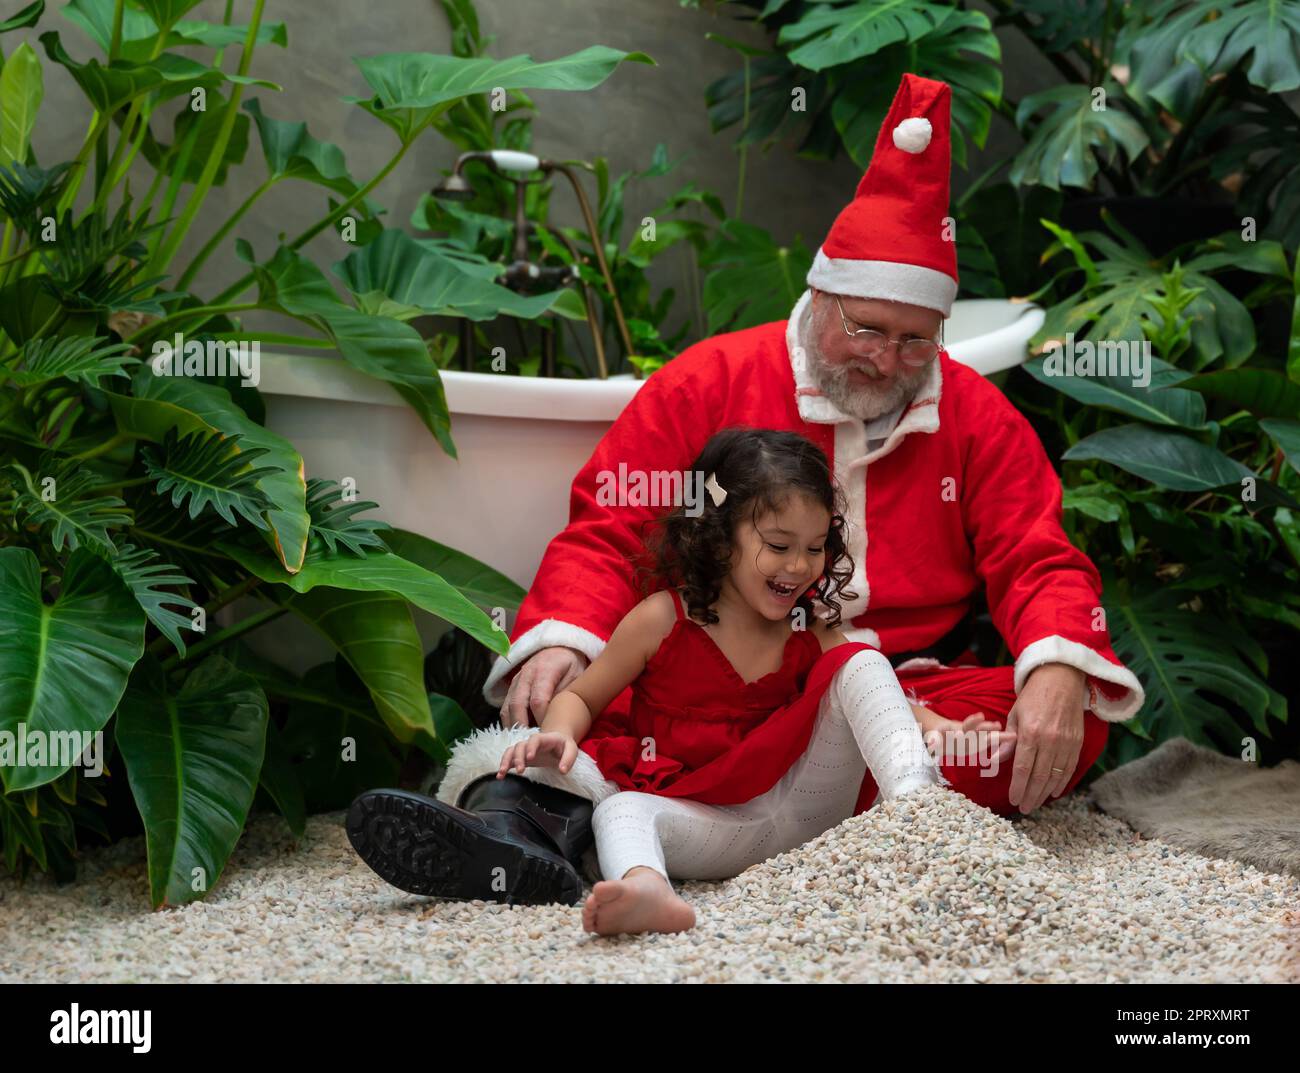 Fröhlicher Weihnachtsmann in rotem Kostüm und süßes kleines Mädchen in rotem Kleid, das auf Stein sitzt und zusammen spielt Stockfoto